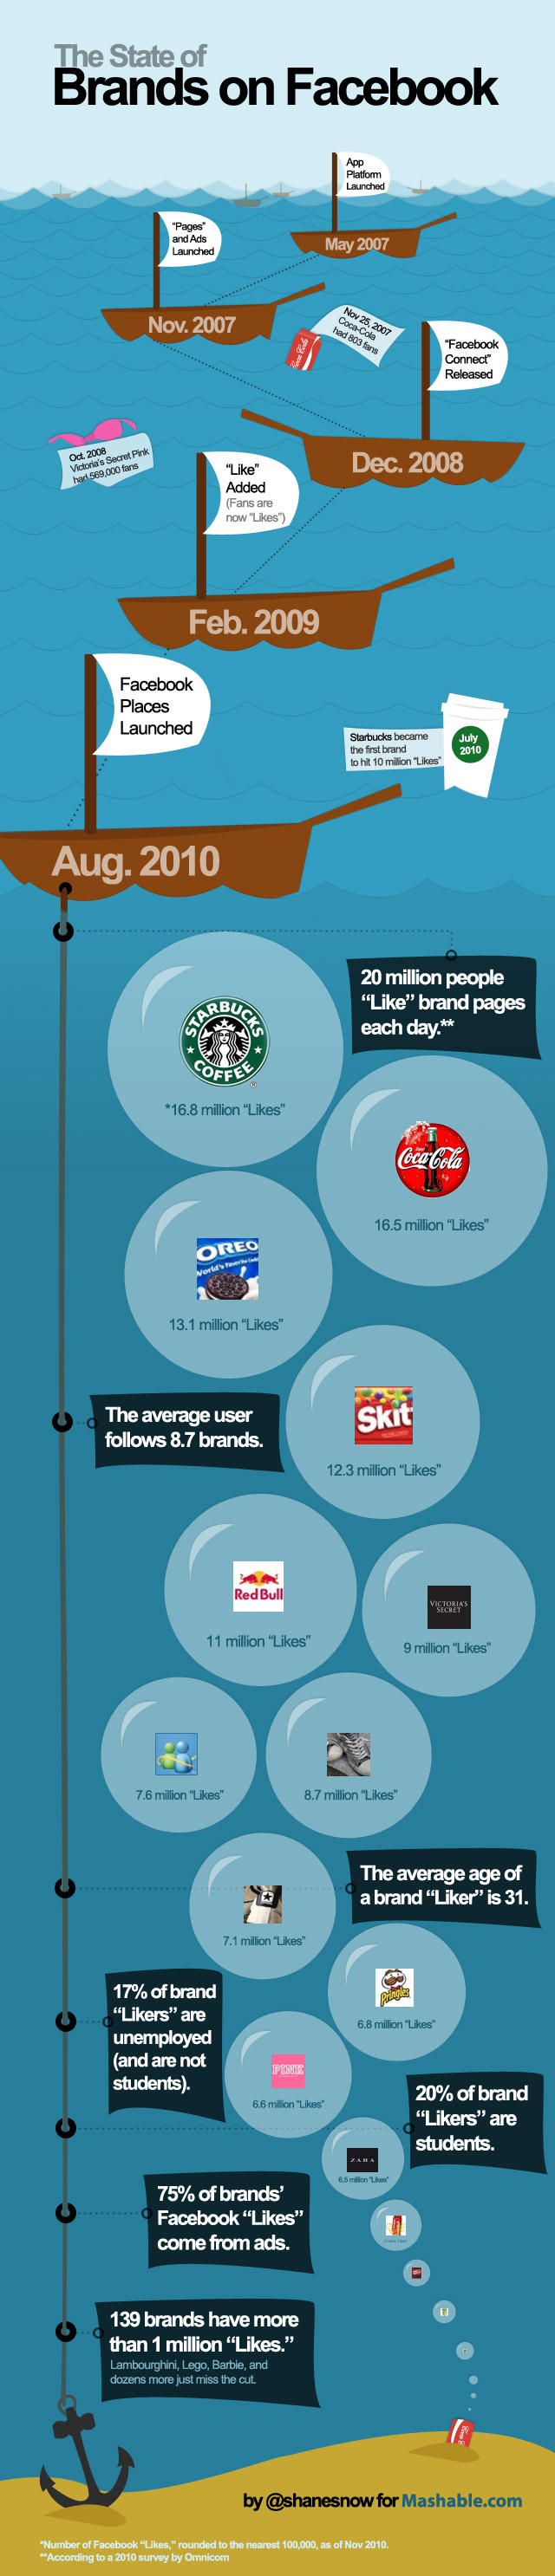 Qui sont les plus grosses marques sur Facebook?